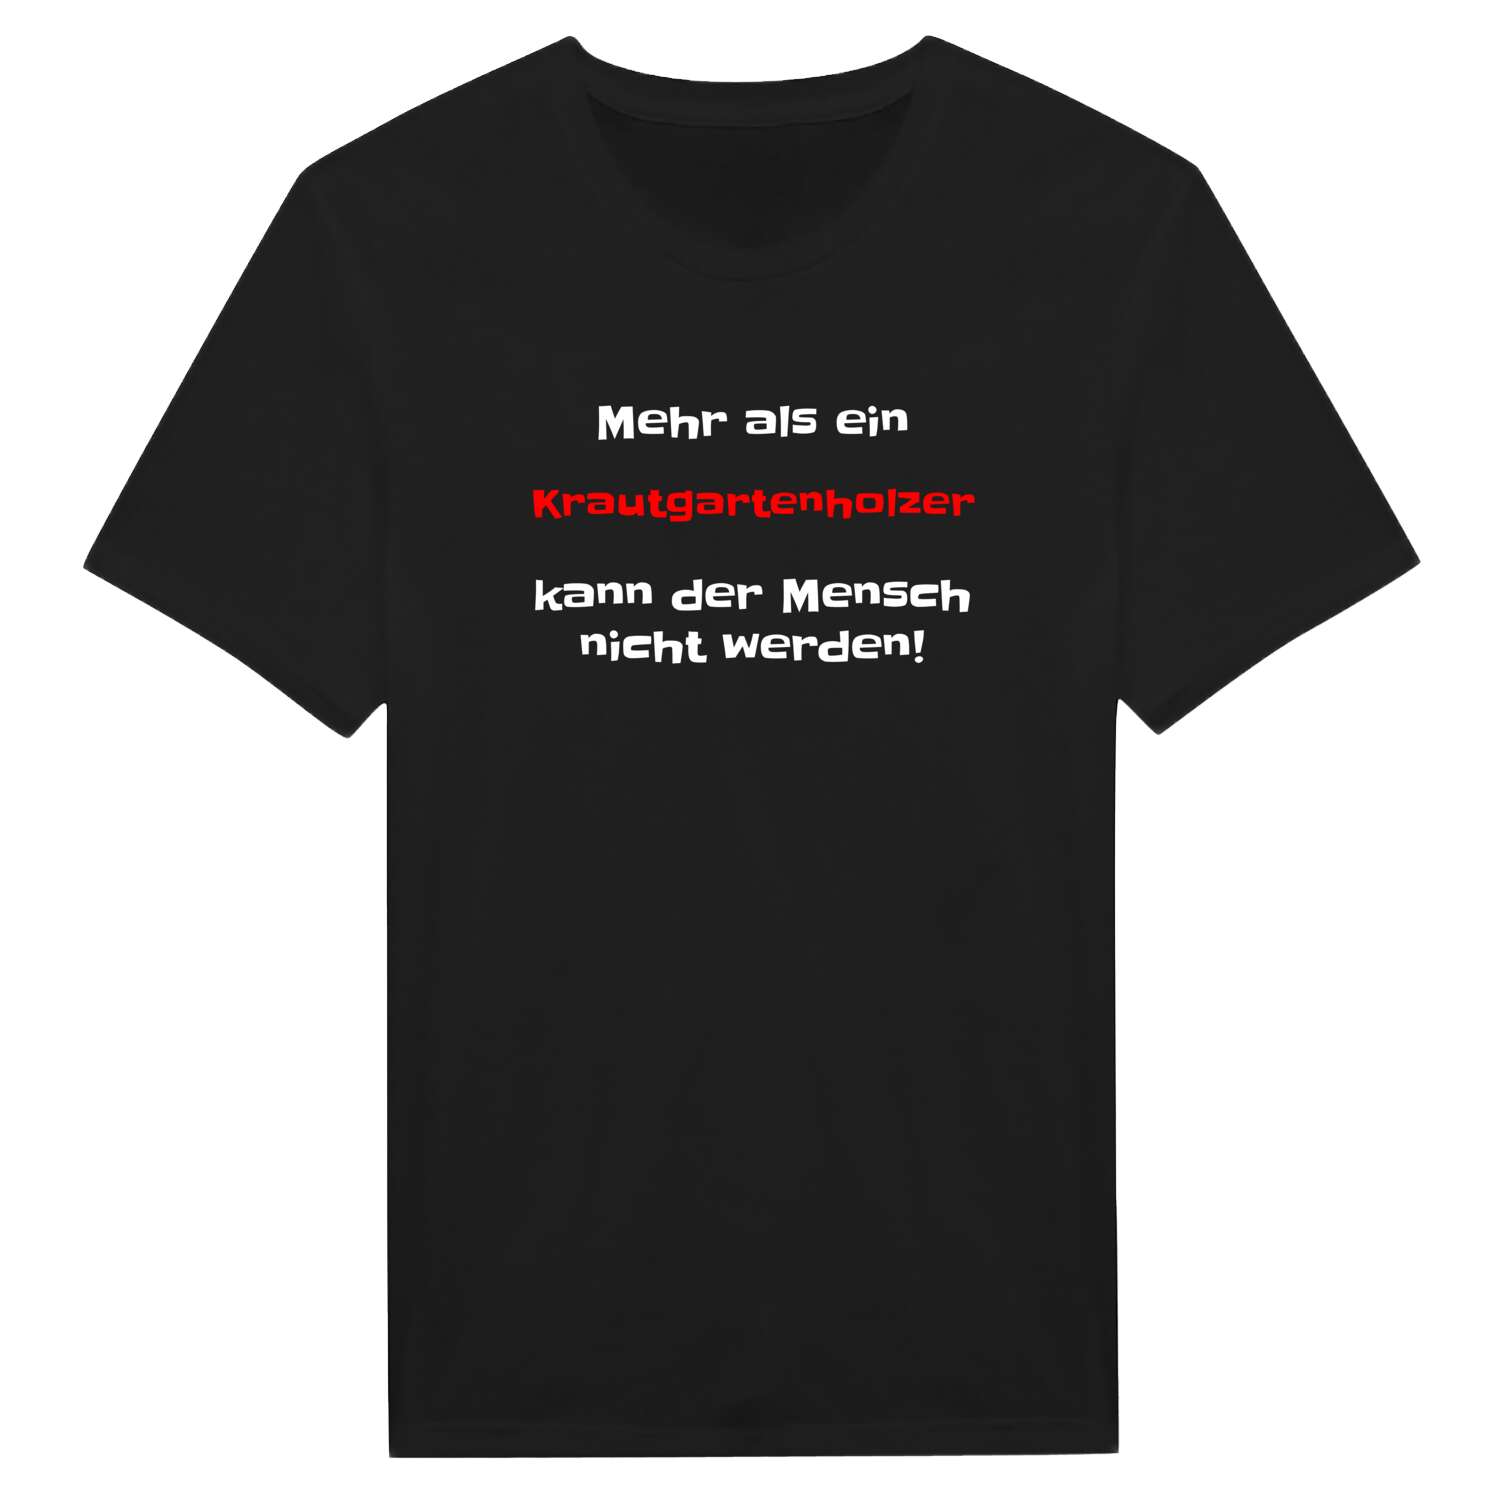 Krautgartenholz T-Shirt »Mehr als ein«